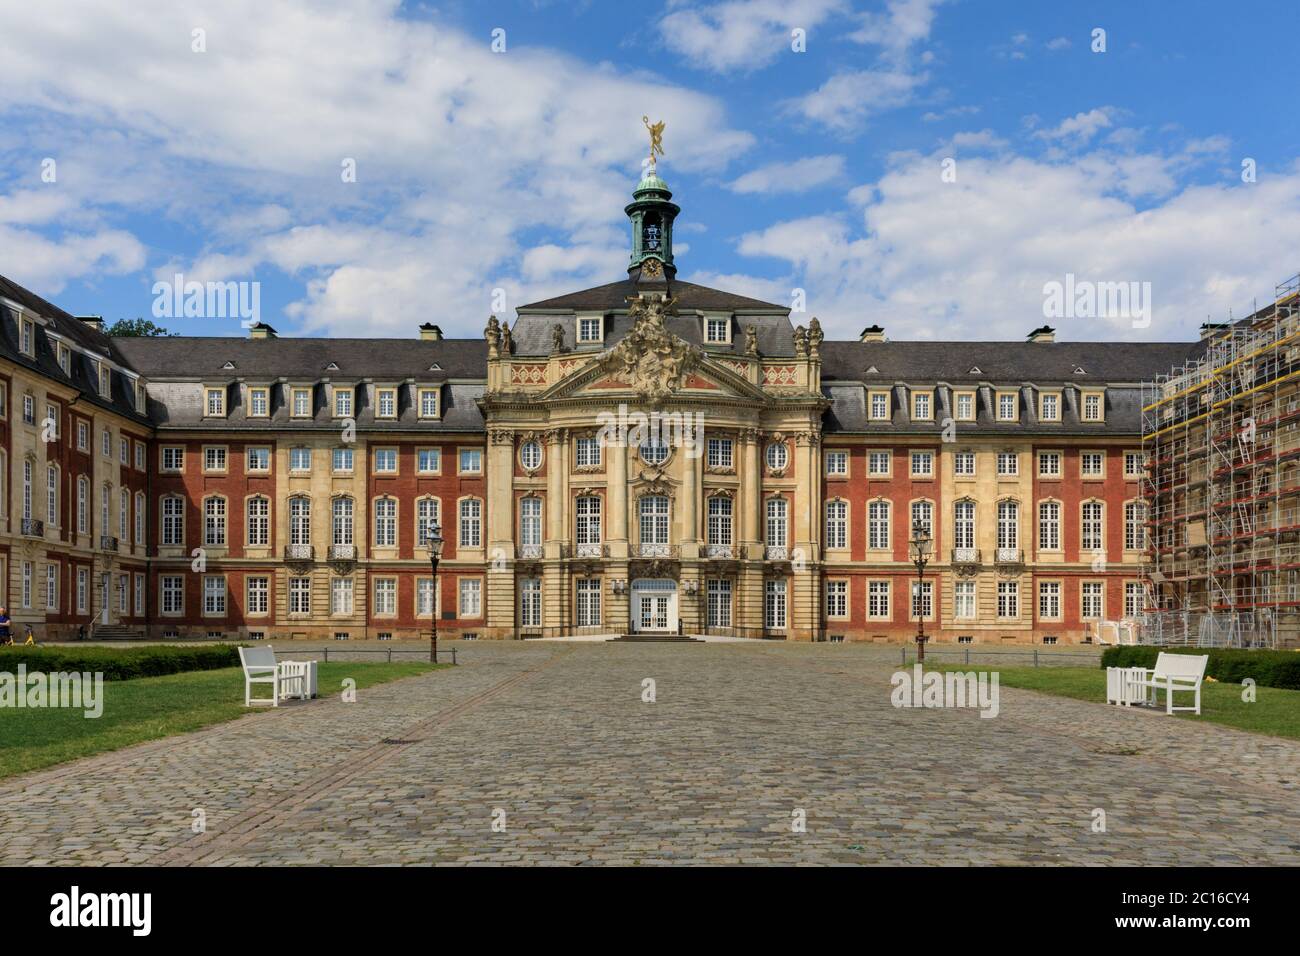 Schloss Muenster or Schloß Münster, front view of the baroque landmark palace, now part of Westfälische Wilhelms-Universität University, Germany Stock Photo